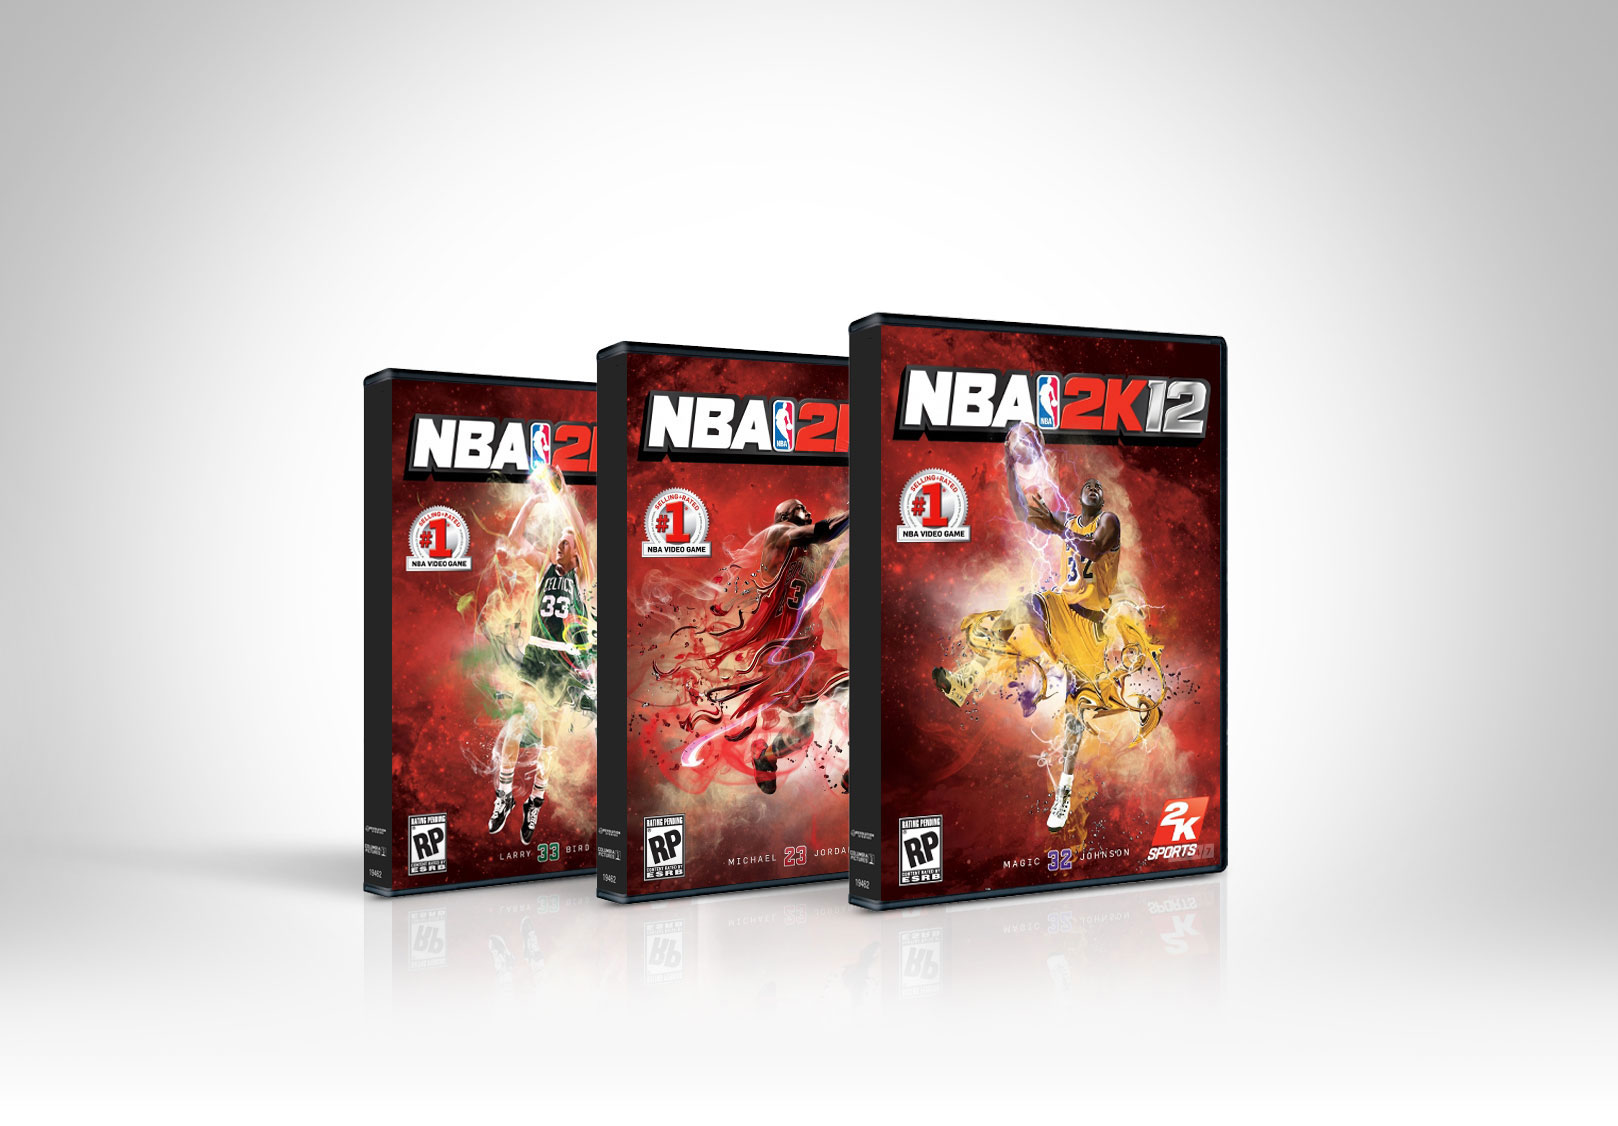  NBA2K12 Packaging Illustrations 